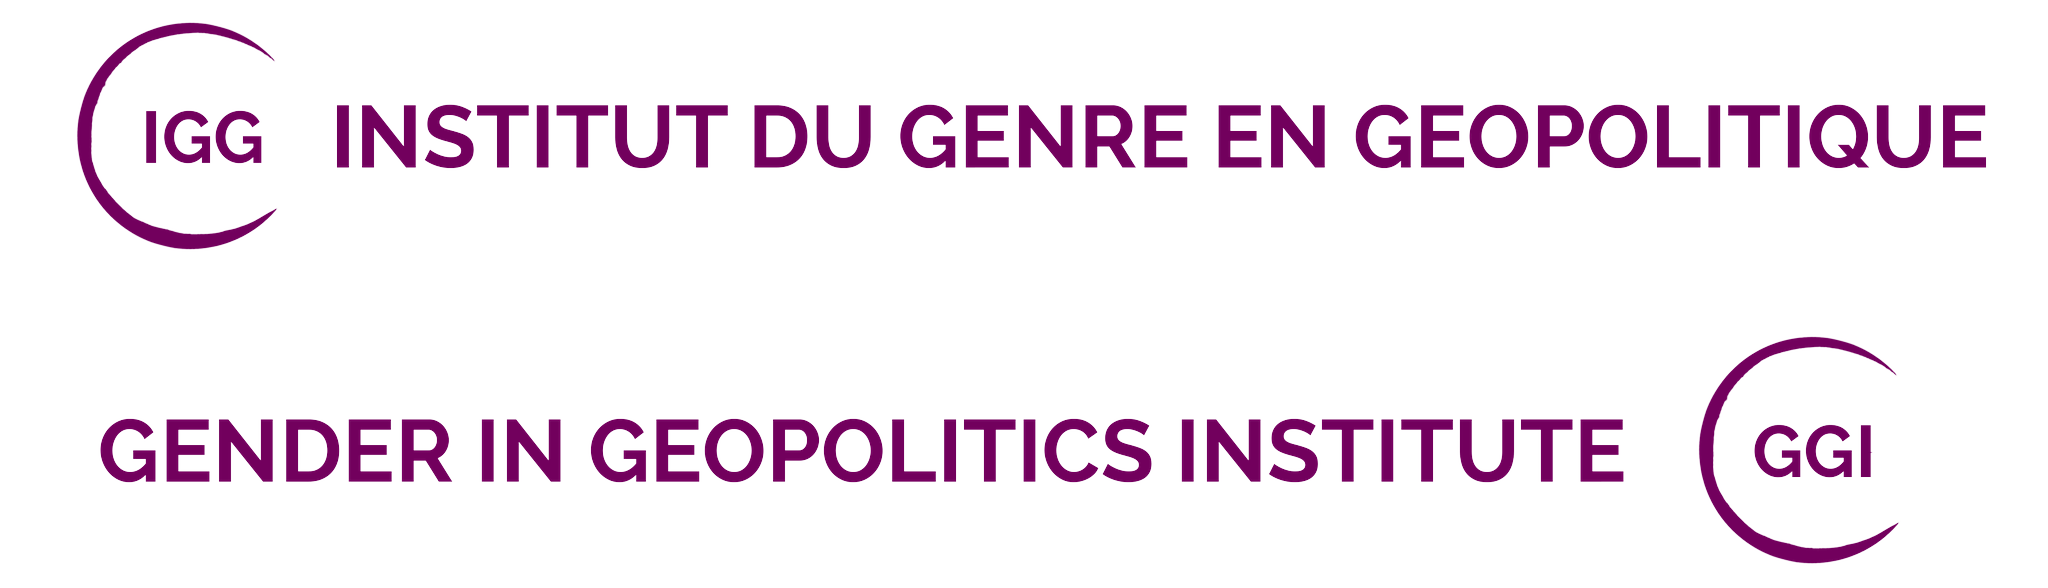 Institut du Genre en Géopolitique